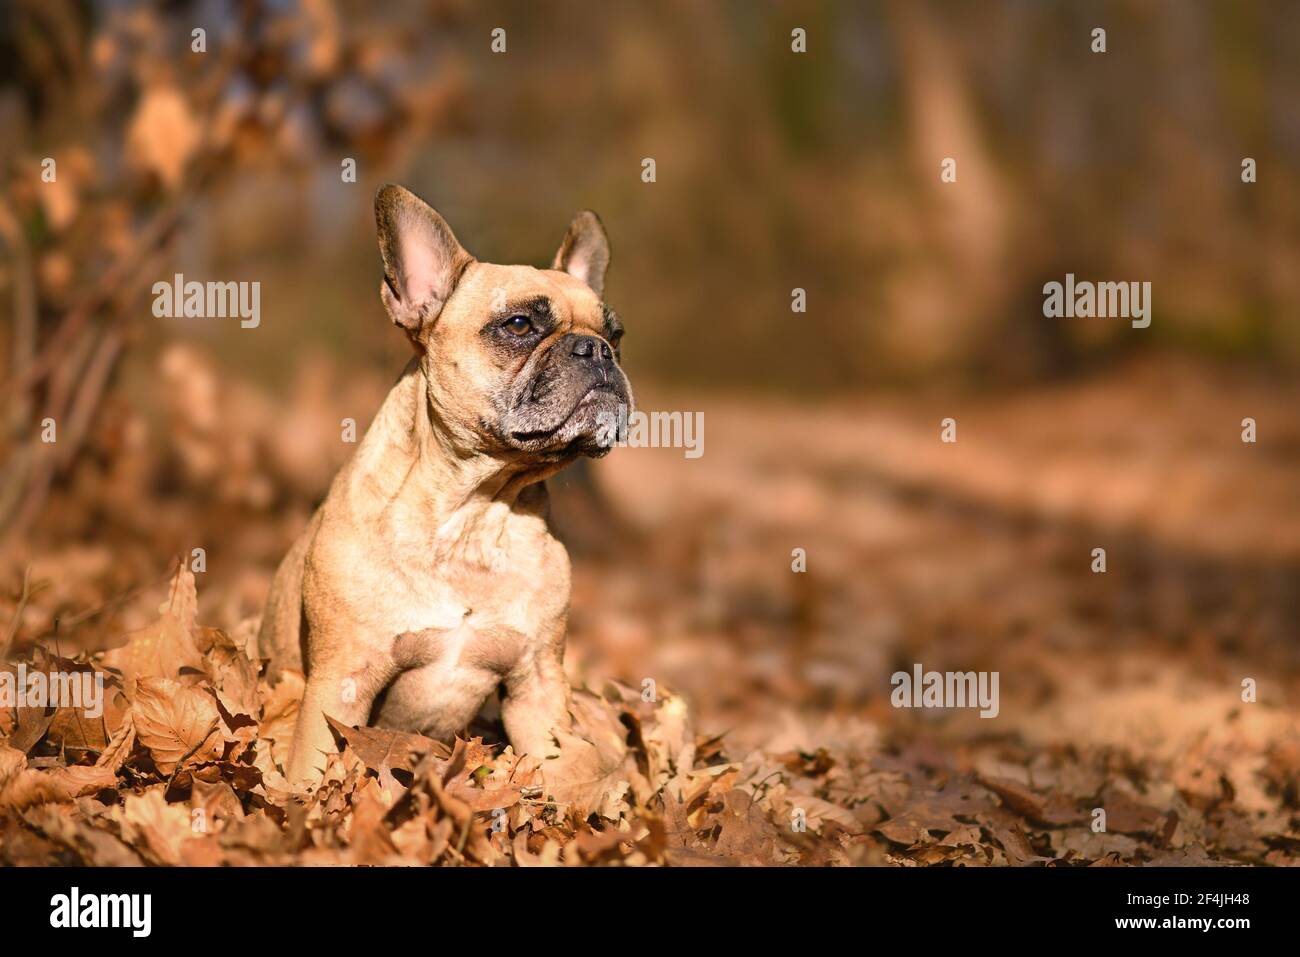 Fawn francese Bulldog cane seduto in foresta con autunno arancione foglie Foto Stock